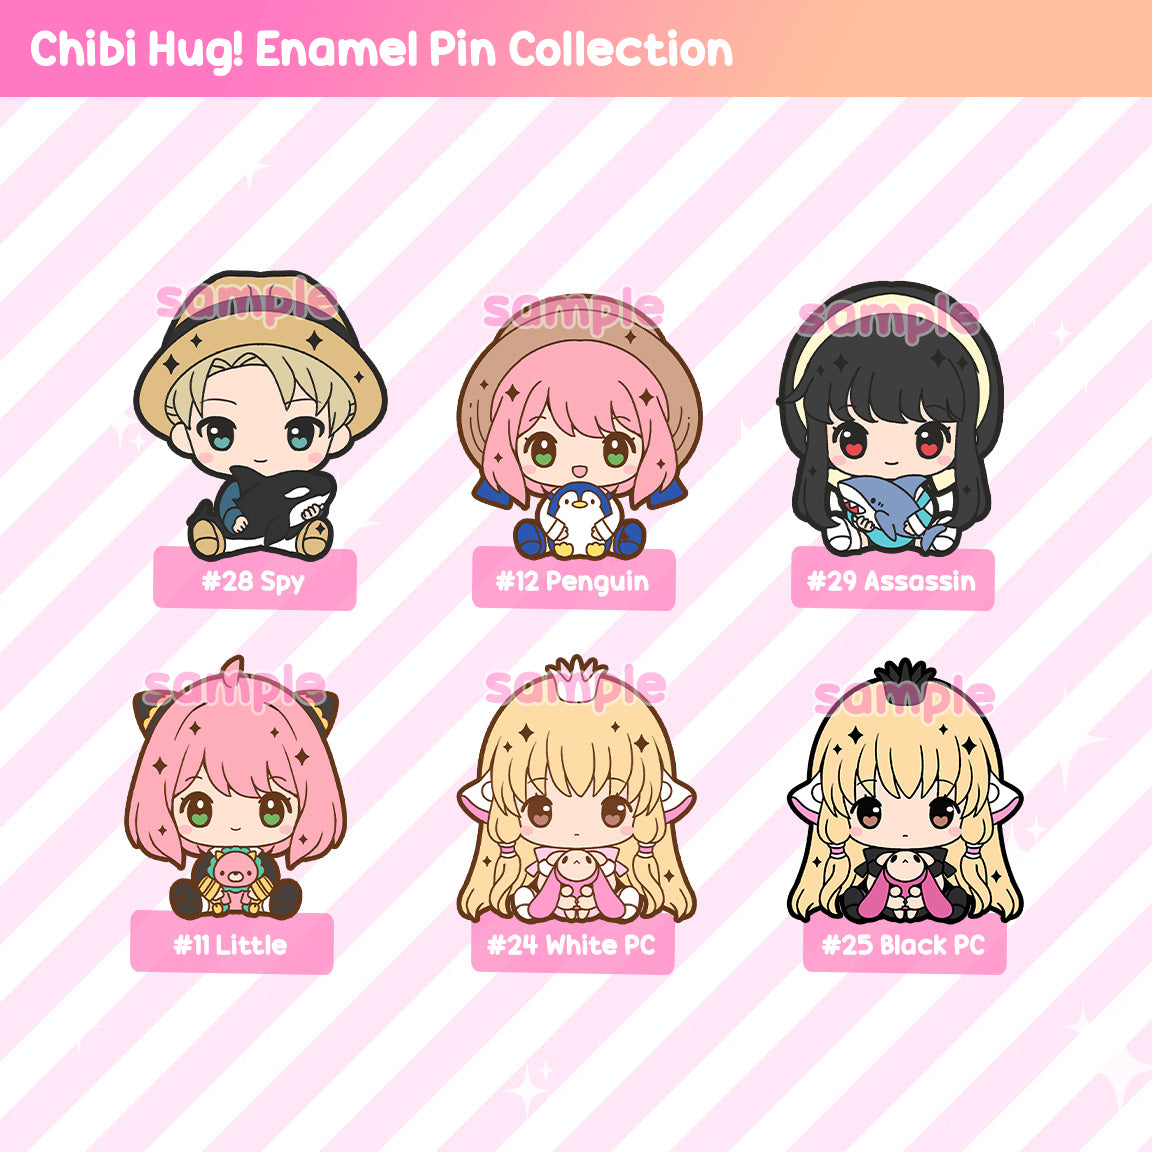 Chibi Hug! Enamel Pin Series - Magical Girls / Shojo / Anime Hits